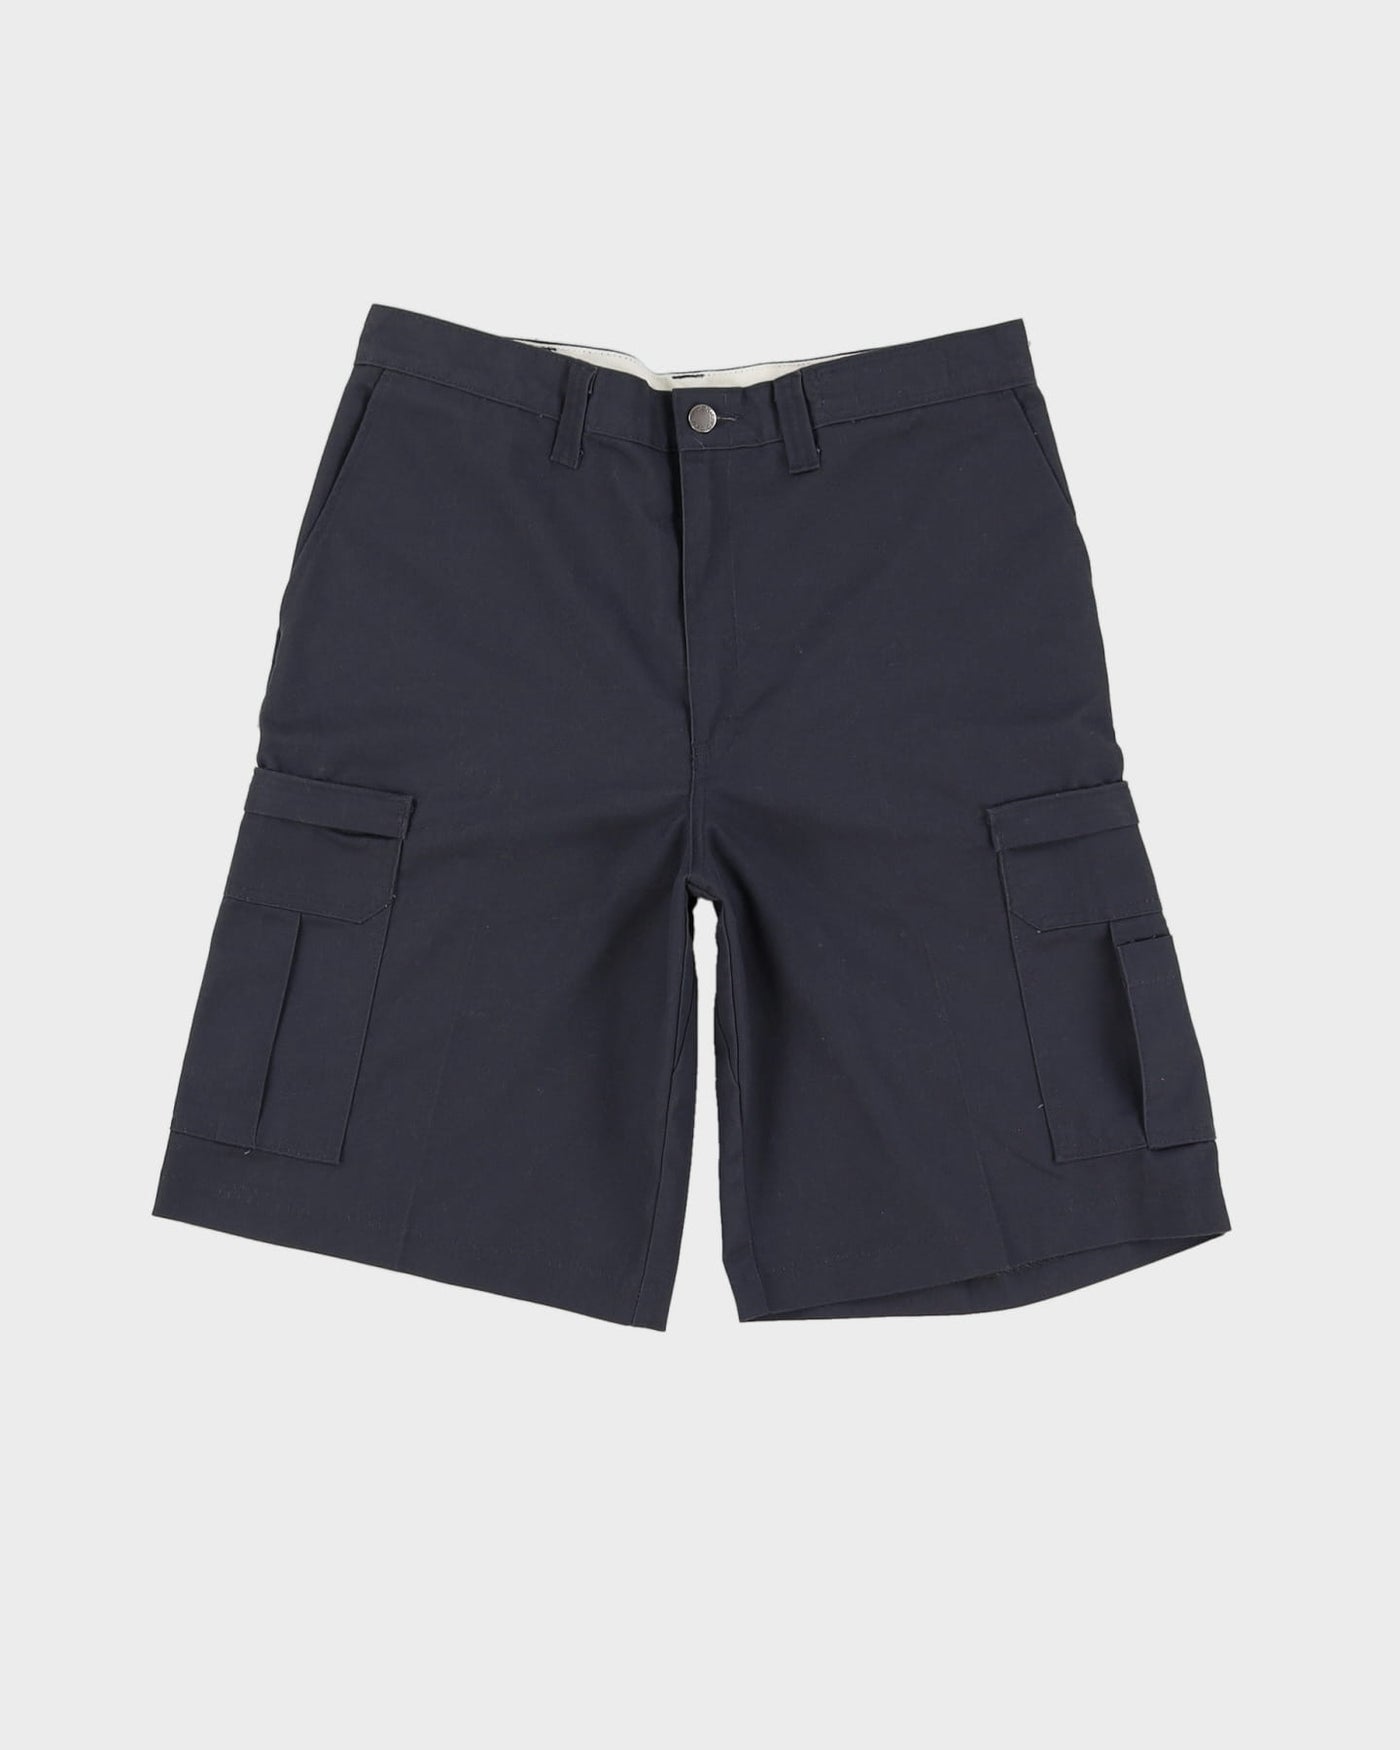 Dickies Grey Workwear Cargo Shorts - W34